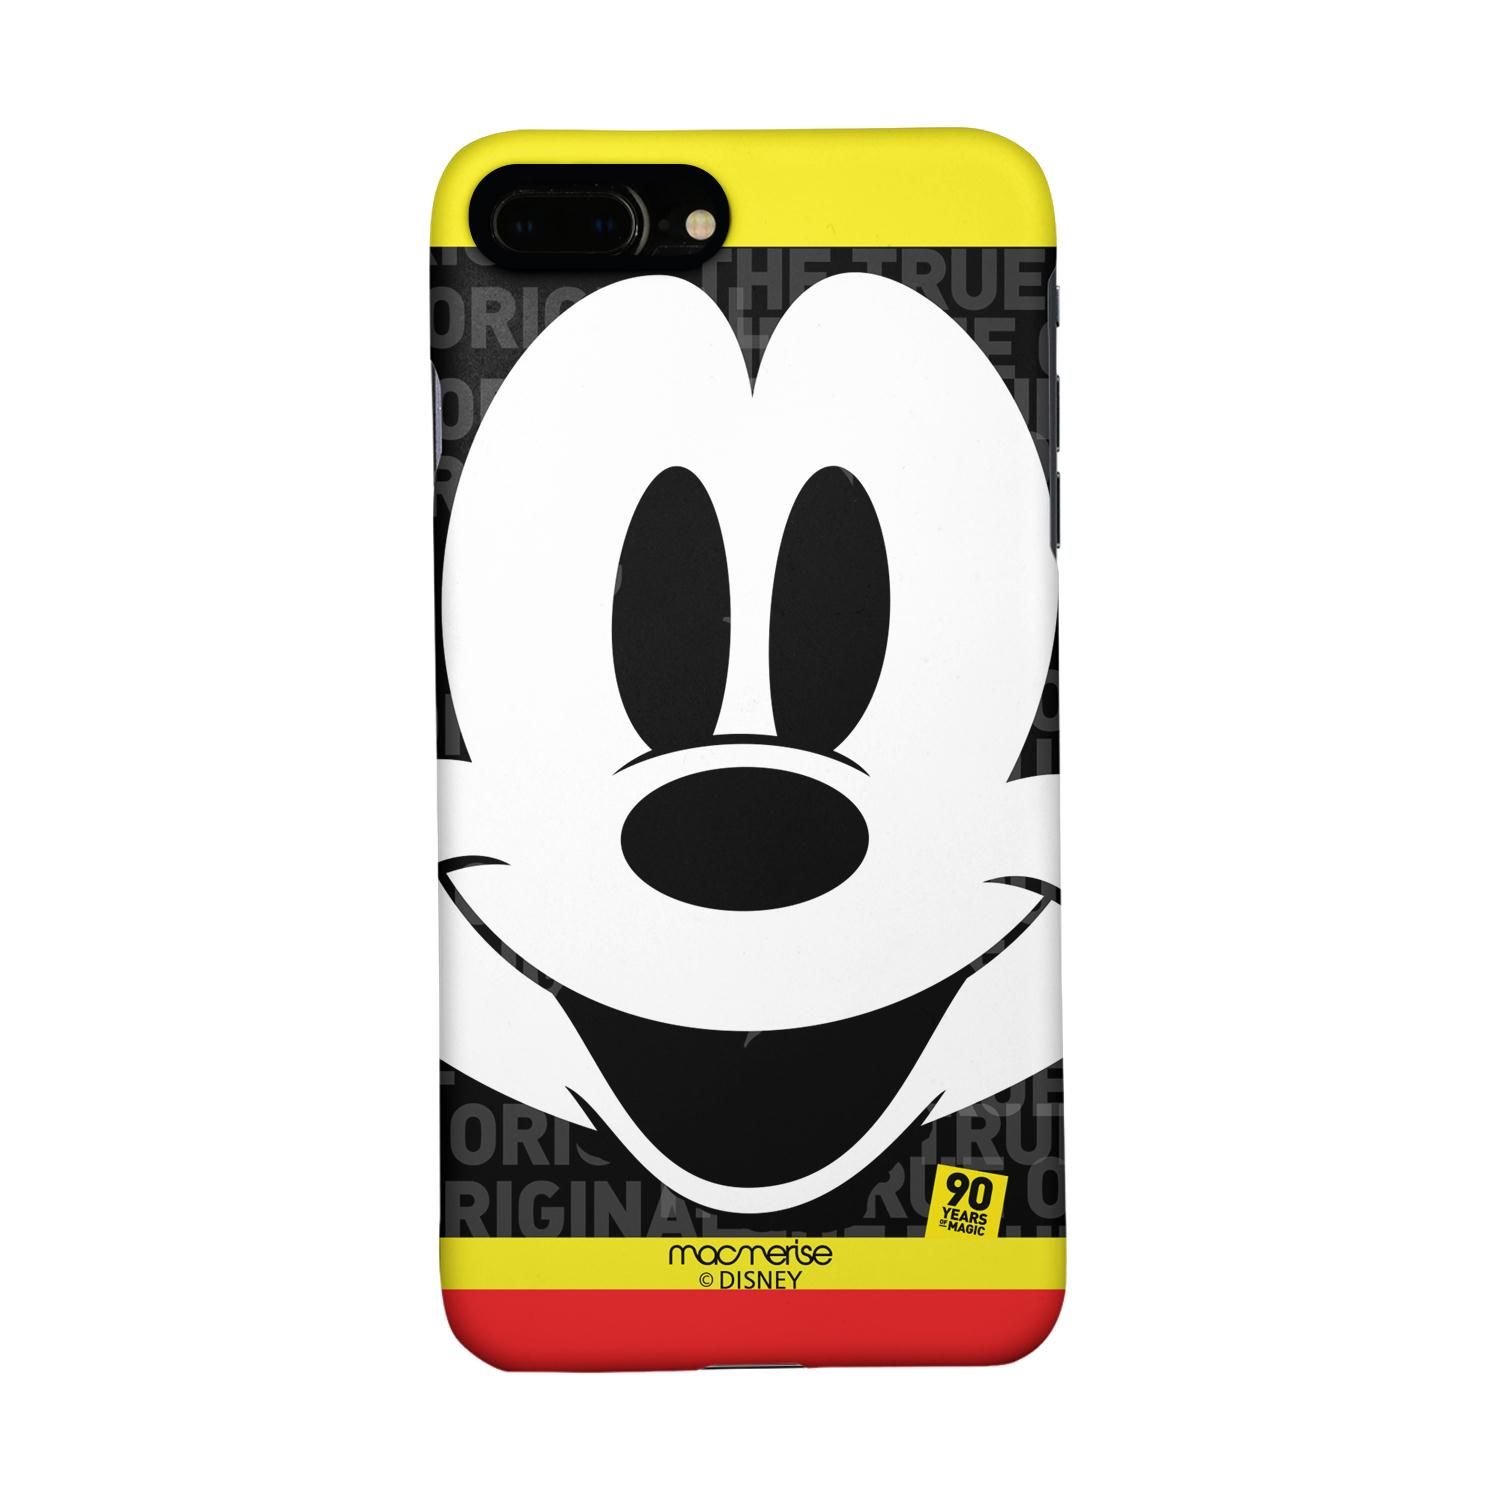 Buy Mickey Original - Sleek Phone Case for iPhone 7 Plus Online